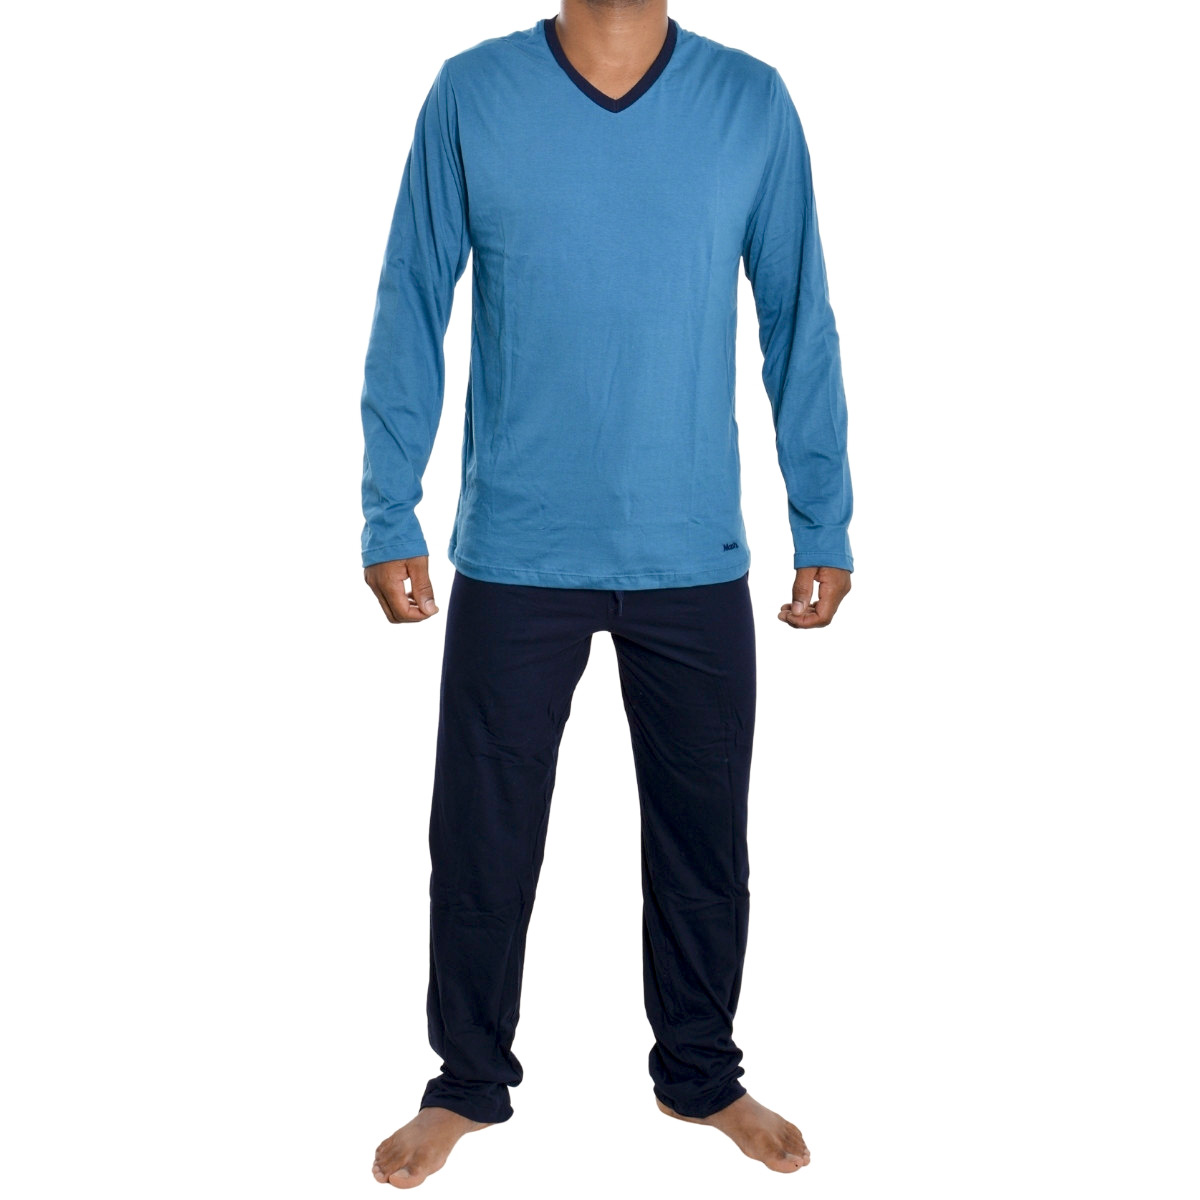 Pijama masculino para o inverno em algodão Mash